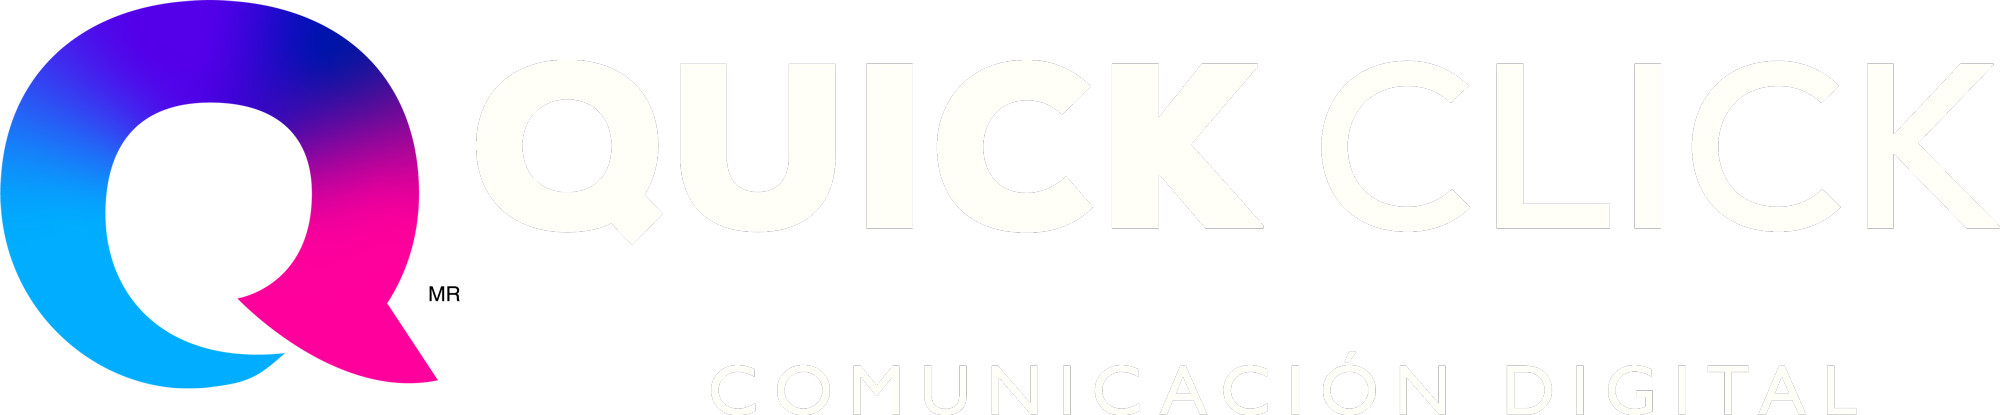 Quickclick